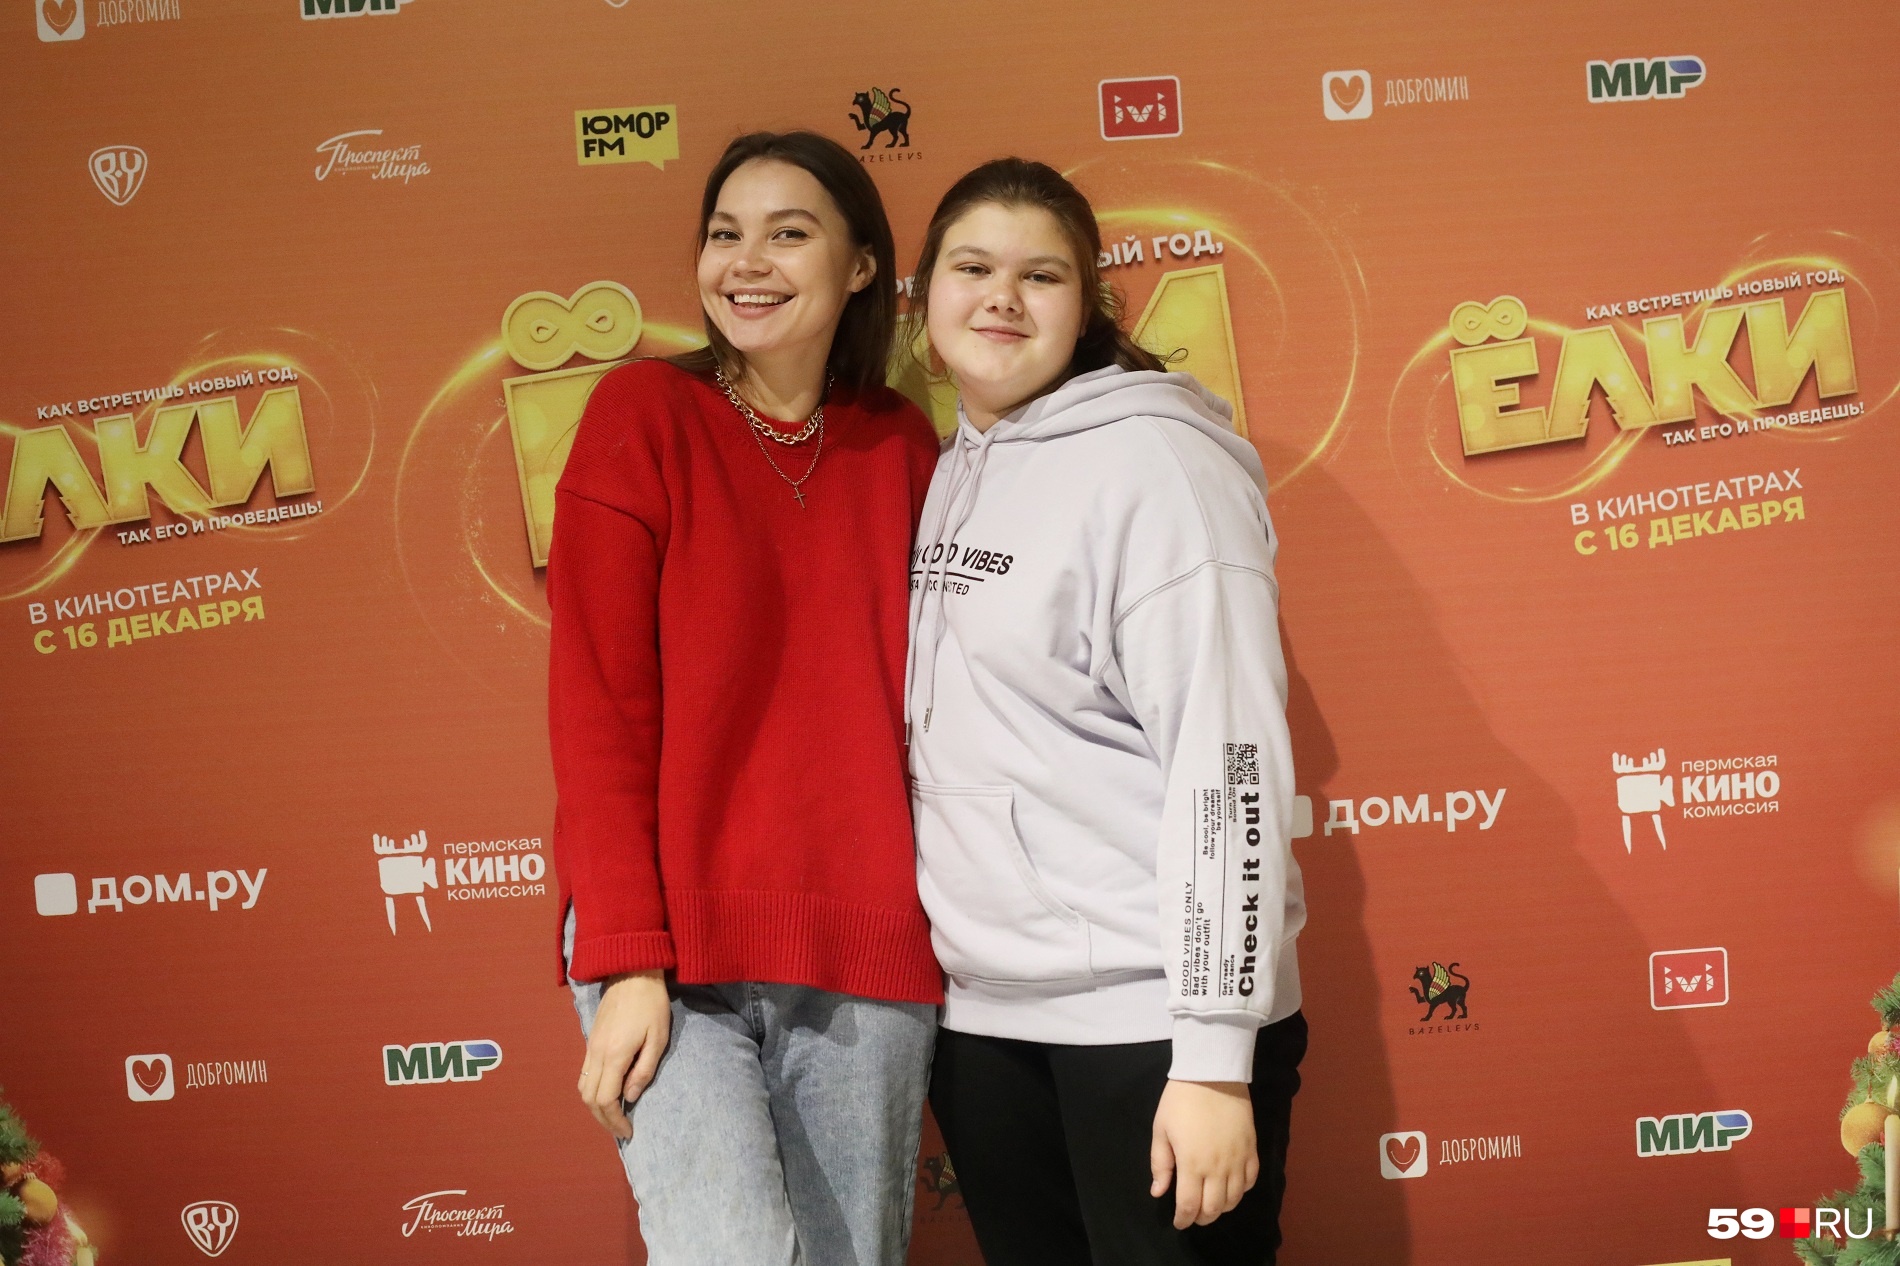 Эти девочки были связаны со съемками фильма «Иван Семенов», но тоже пришли поддержать режиссера. Слева — Екатерина Колесова, справа — Соня Мосина, сыгравшая Аделаиду